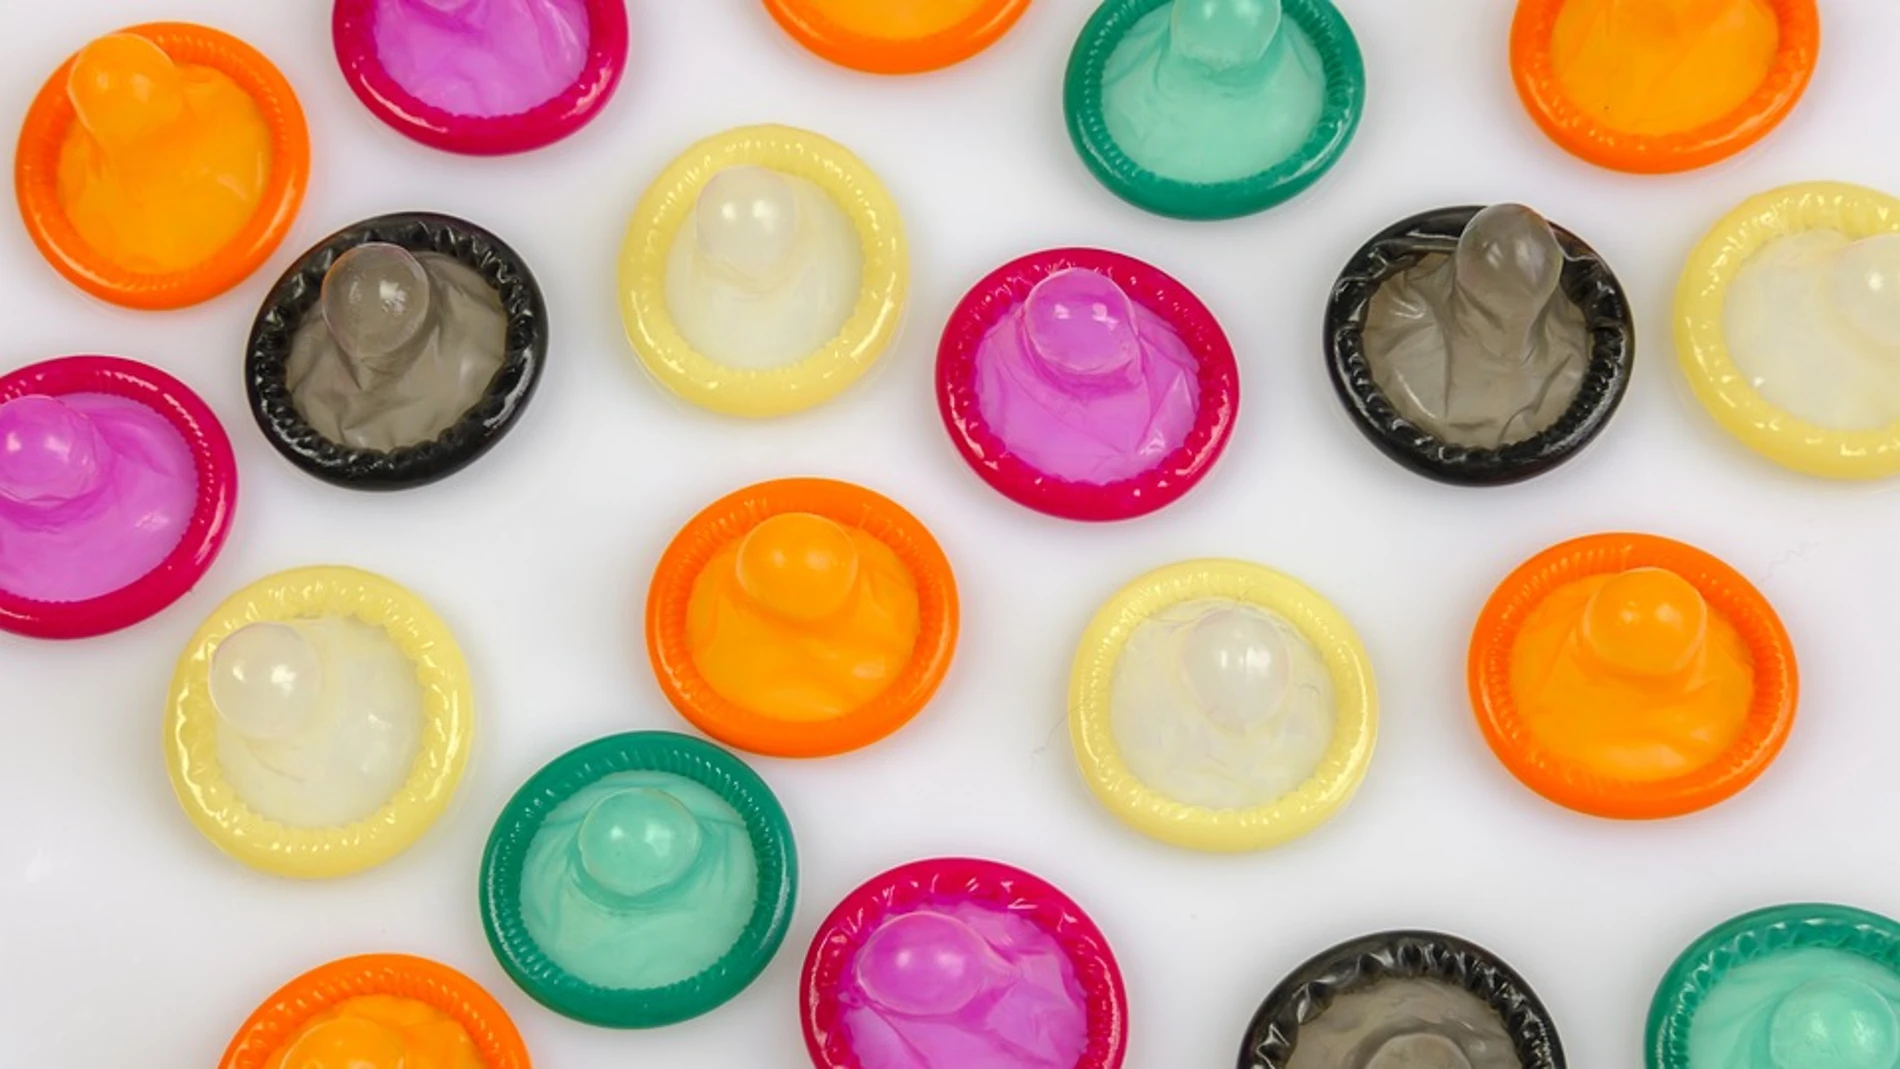 "No salgas sin condones": la campaña que advierte a los jóvenes sobre el VIH y otras infecciones de transmisión sexual